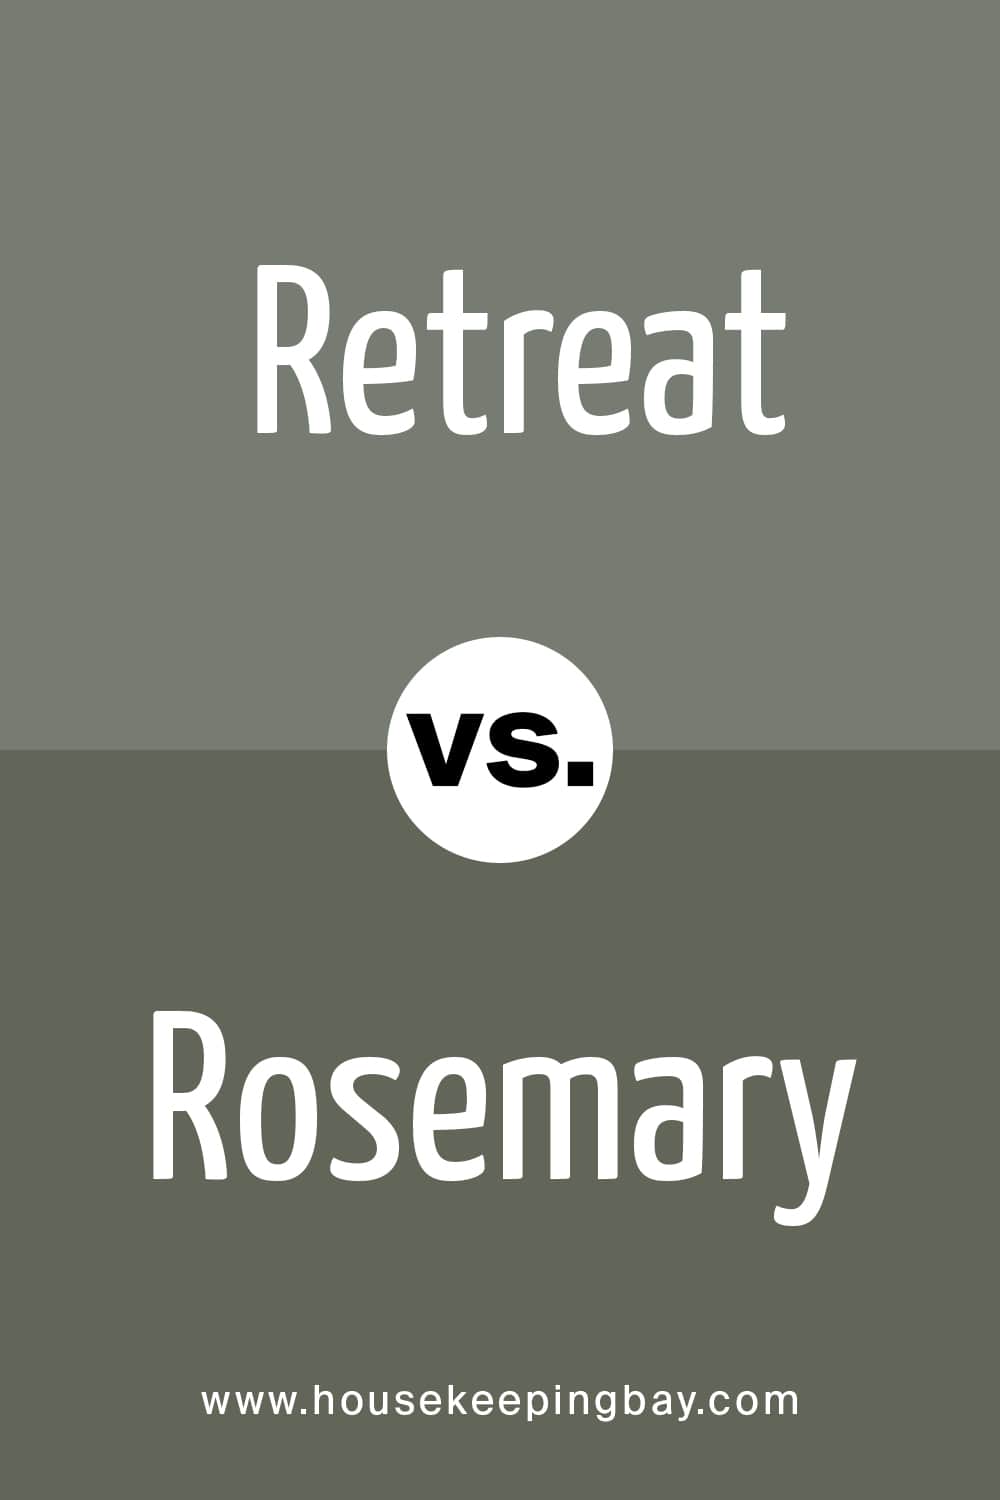 Retreat vs Rosemary